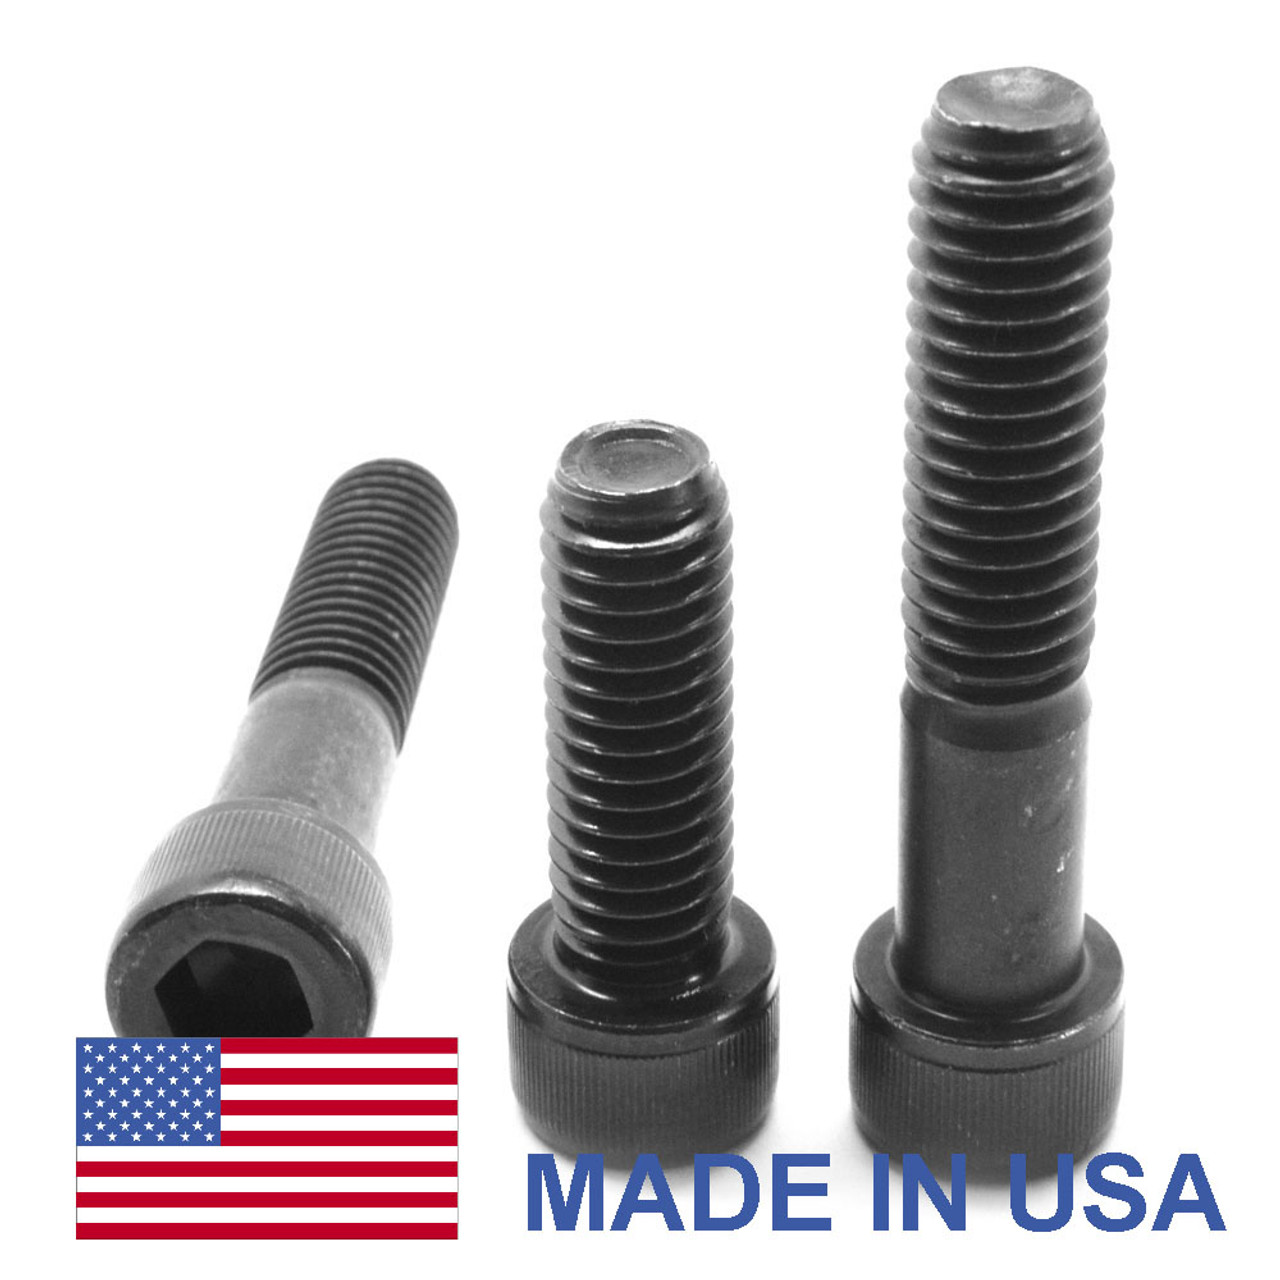 M12 x 1.75 x 35 MM Coarse Thread Socket Head Cap Screw - USA Alloy Steel Thermal Black Oxide